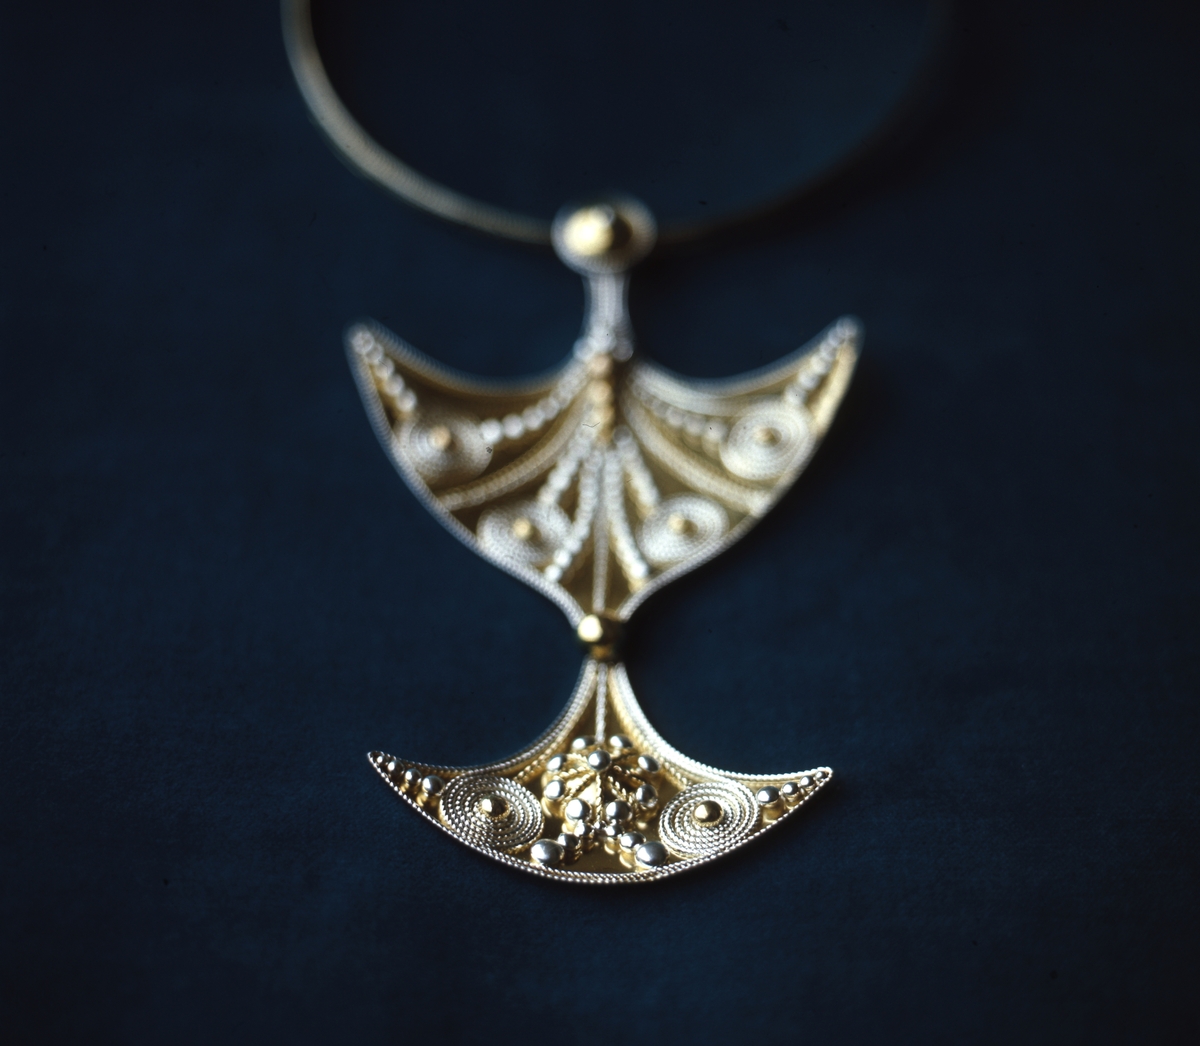 Halssmycke i guld av Rosa Taikon: "Somnakono towhér, Guldyxan". Smycket är dekorerat med silvergranulat och filigrantråd. Smycket finns idag i Röhsska museets samlingar.